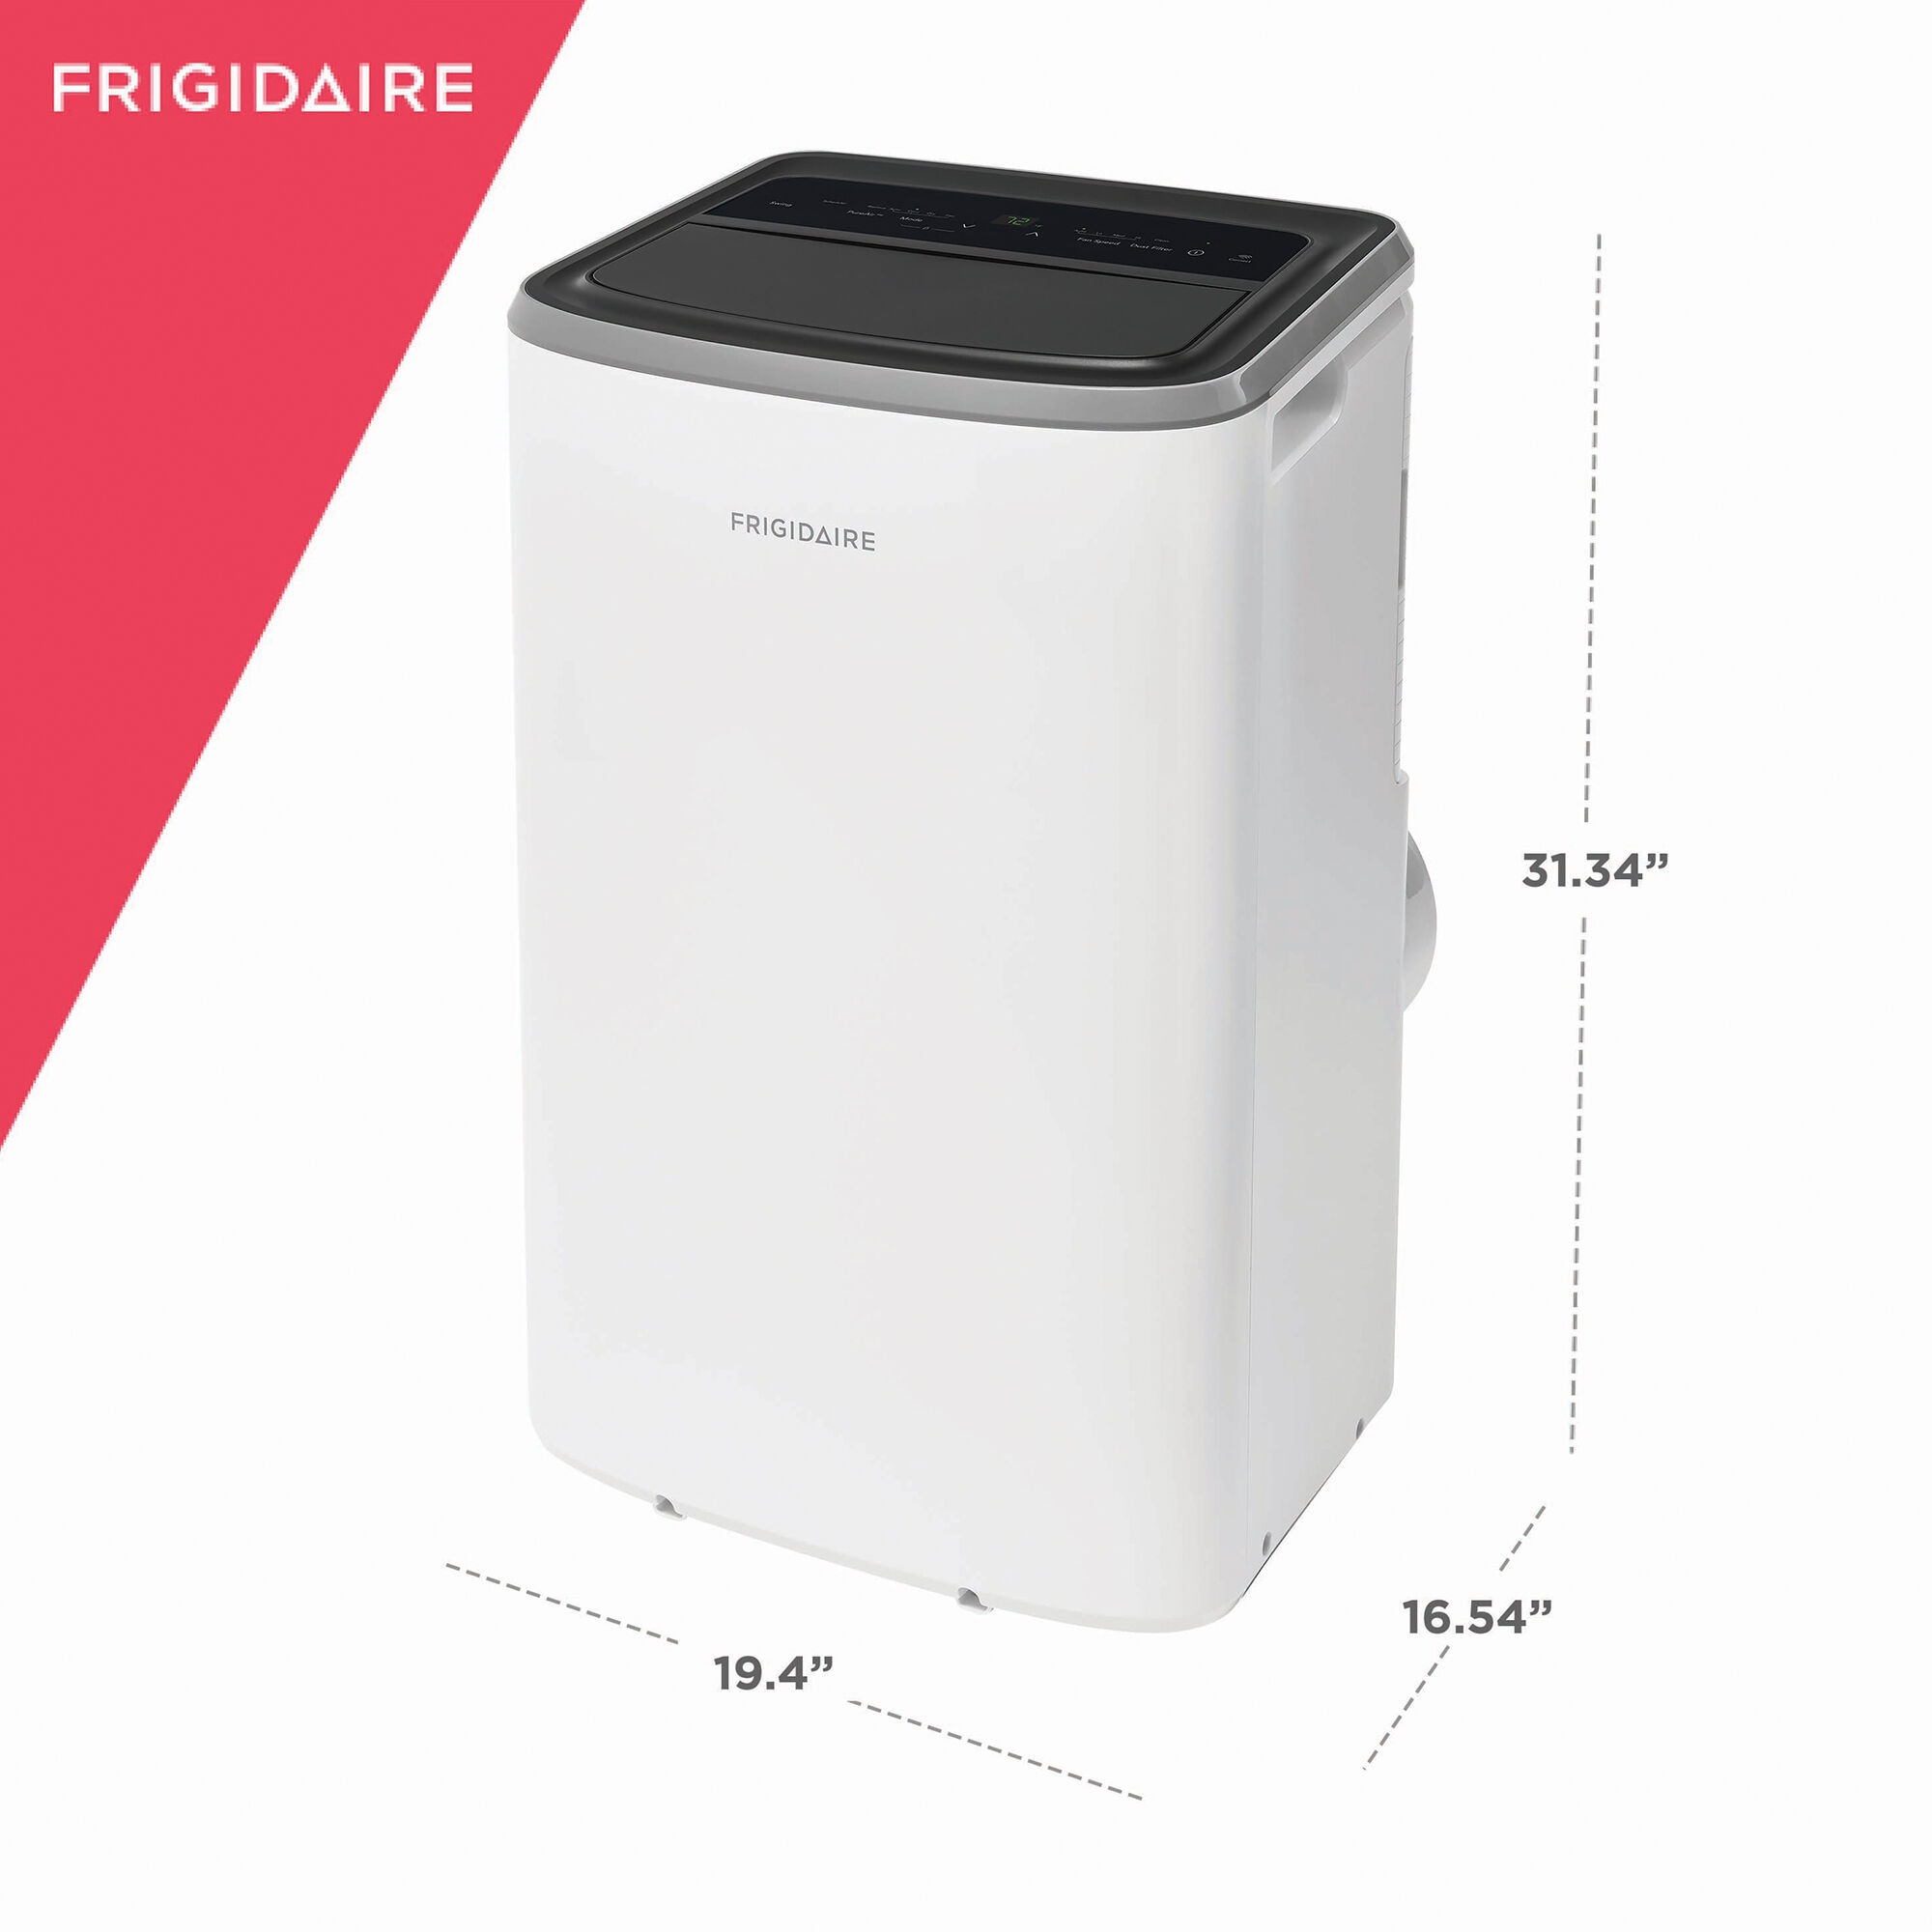 Frigidaire 14,000 BTU (10,000 BTU DOE) Smart Portable Air Conditioner with  3 Fan Speeds, Sleep Mode & Remote Control - White